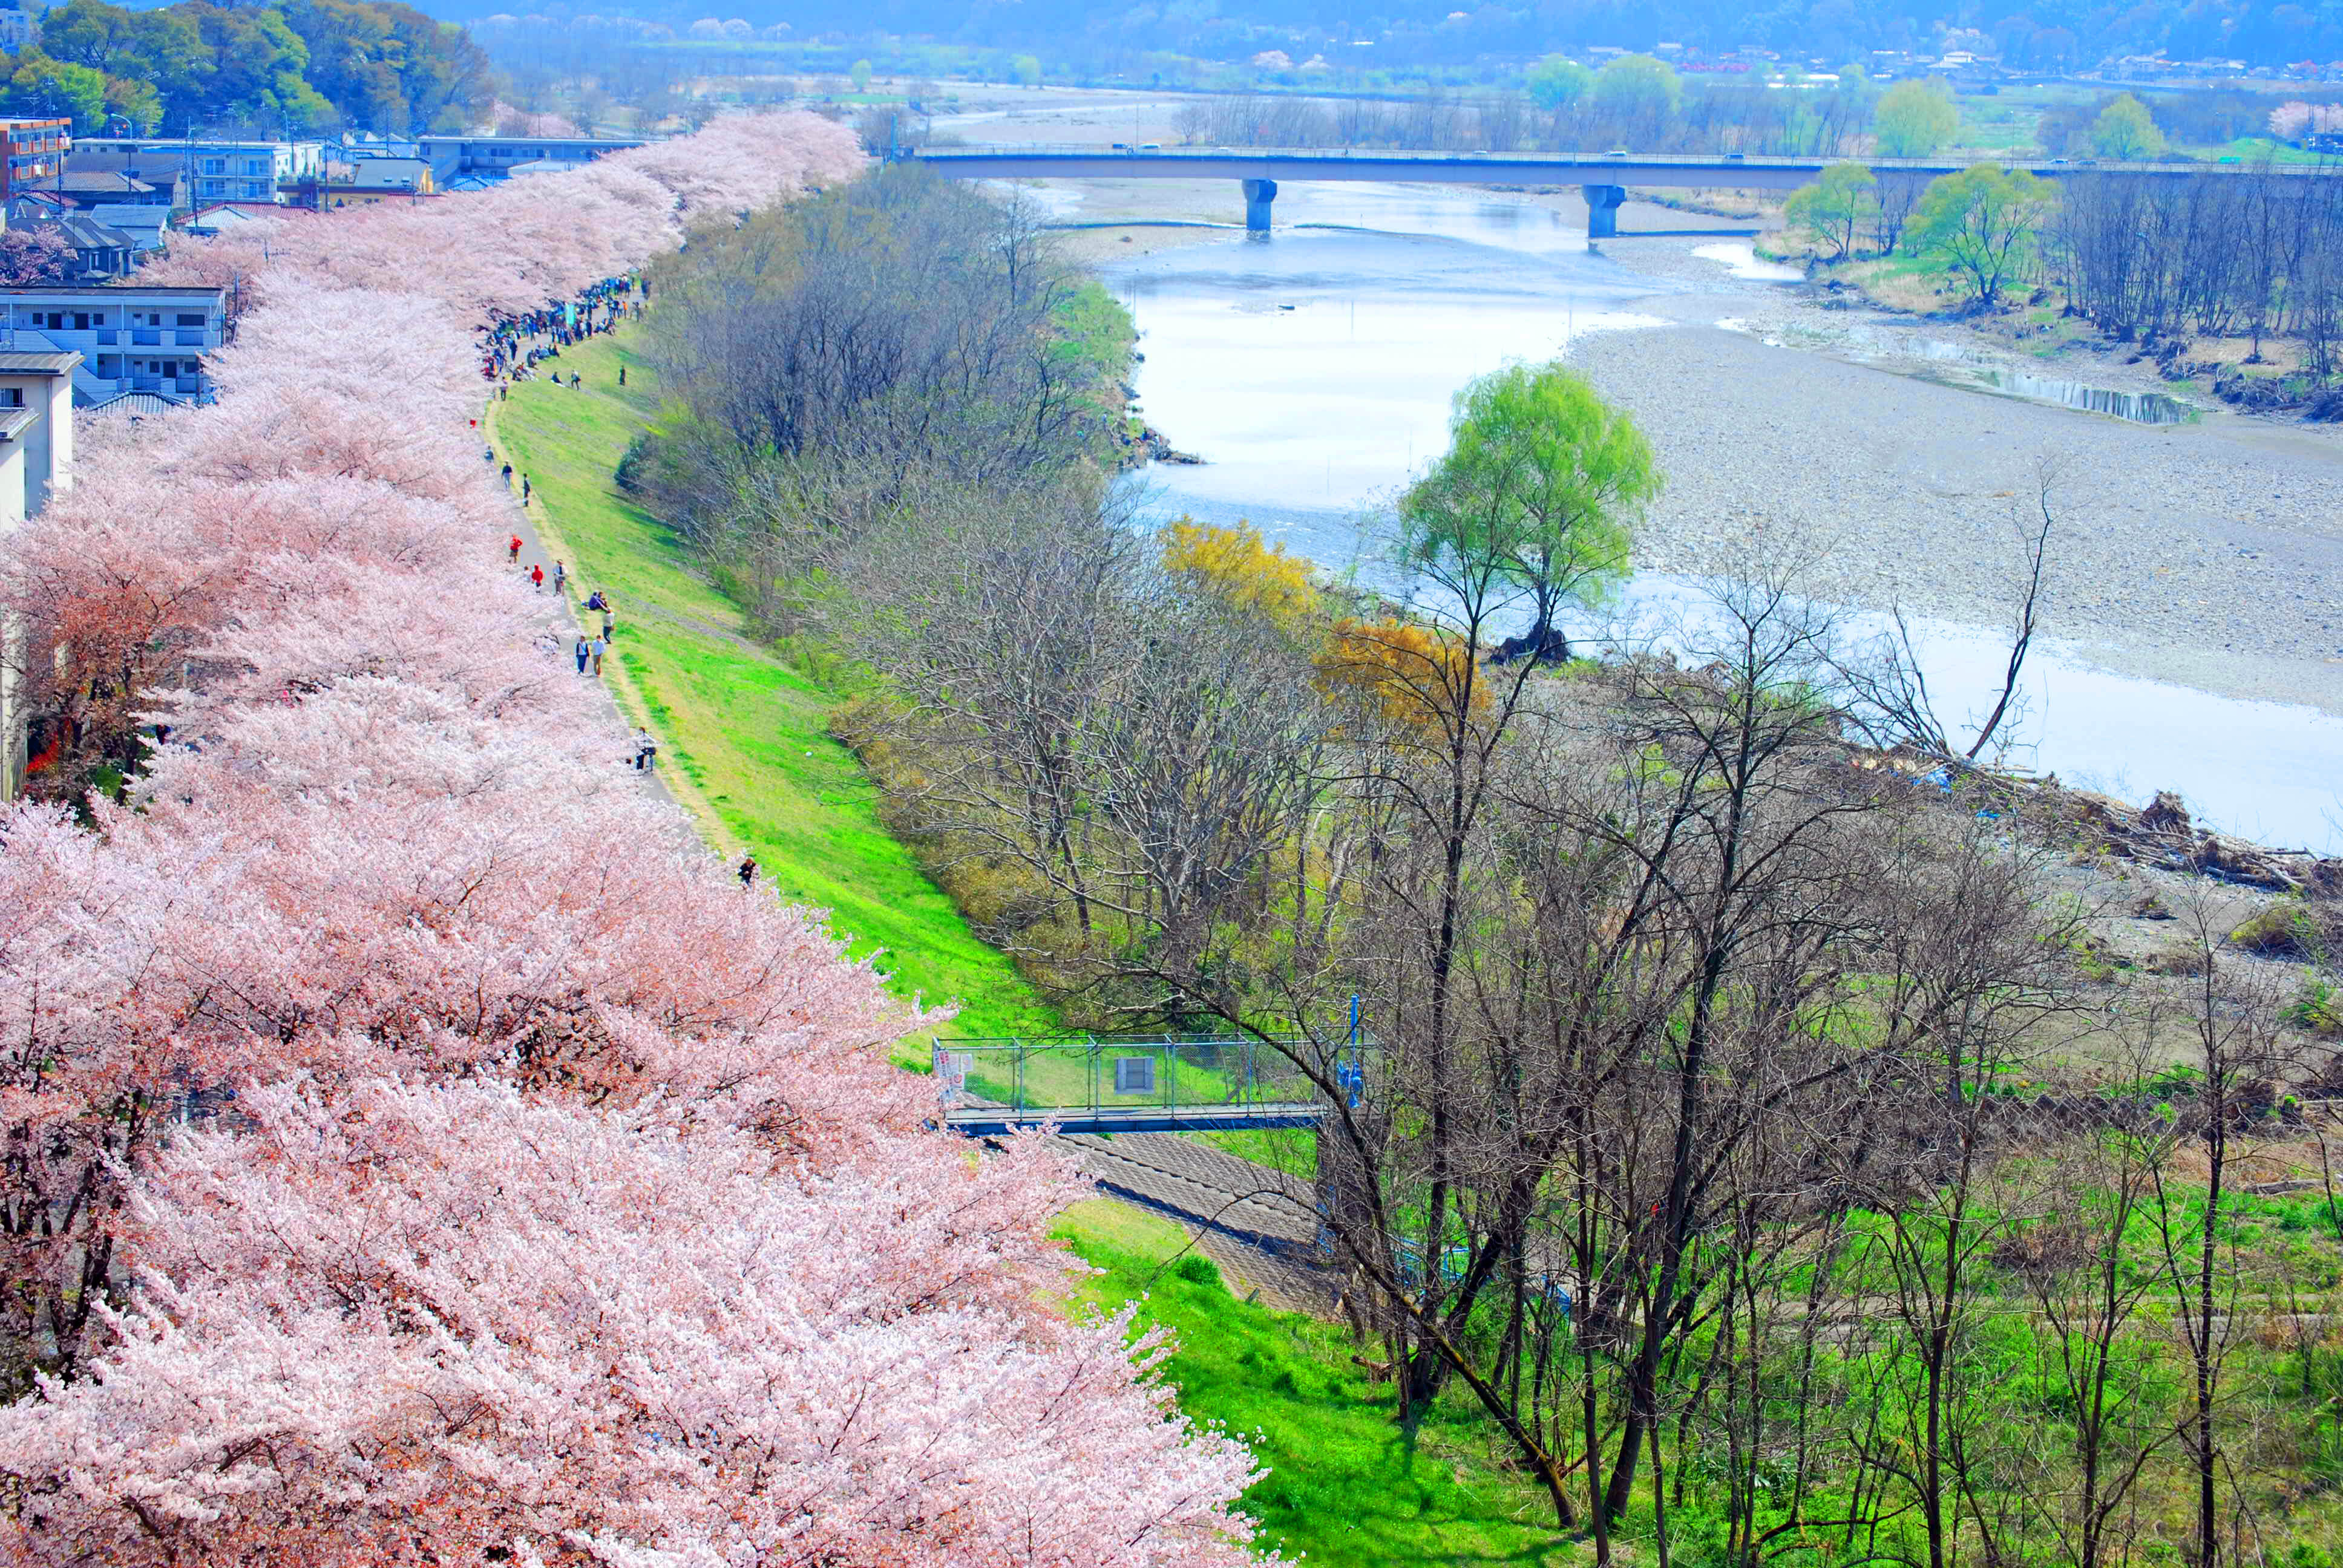 多摩川に咲き乱れる約2 5kmの 桜並木 は圧巻 第34回ふっさ桜まつり が3月25日から開催 福生市役所のプレスリリース